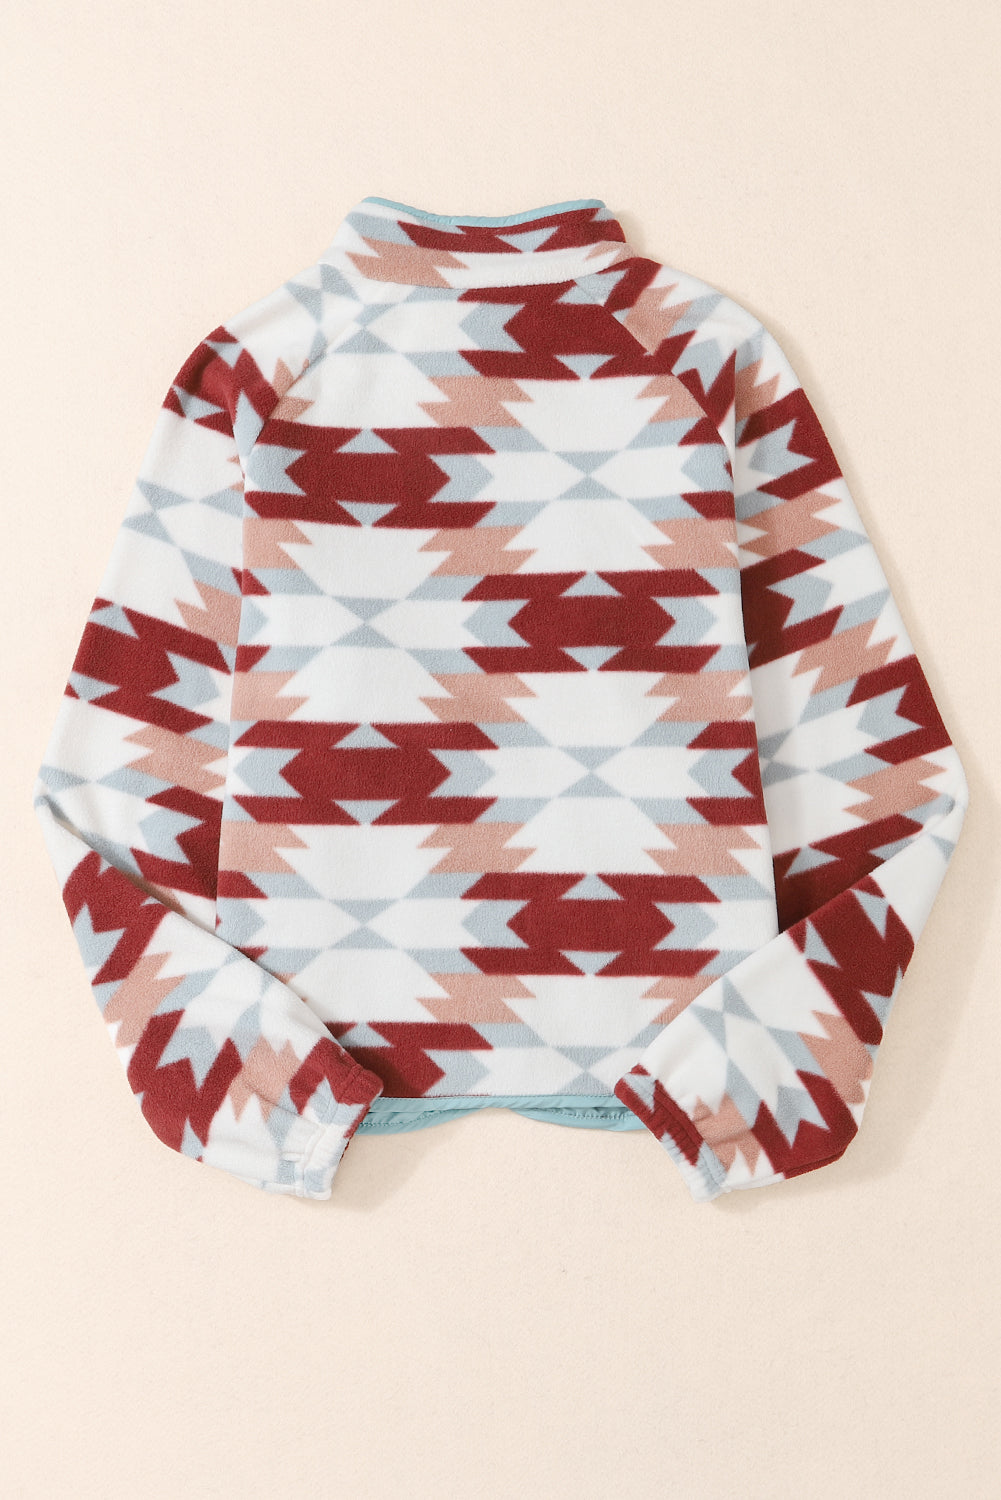 Green Geometric Aztec Pattern Plus Size Fleece Jacket